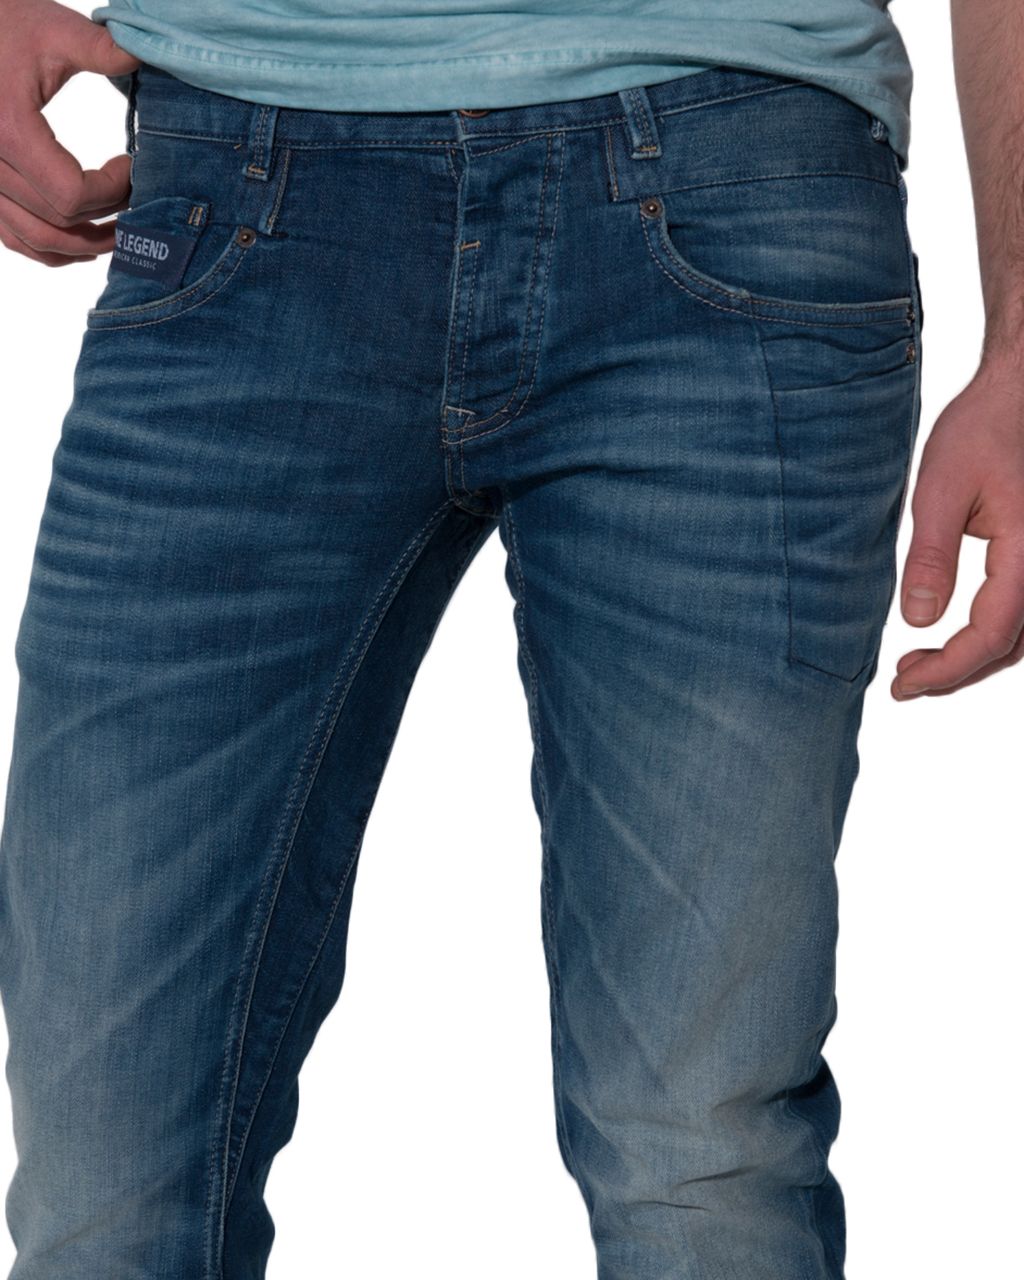 PME Legend Commander 2 Jeans | Shop nu - Only for Men